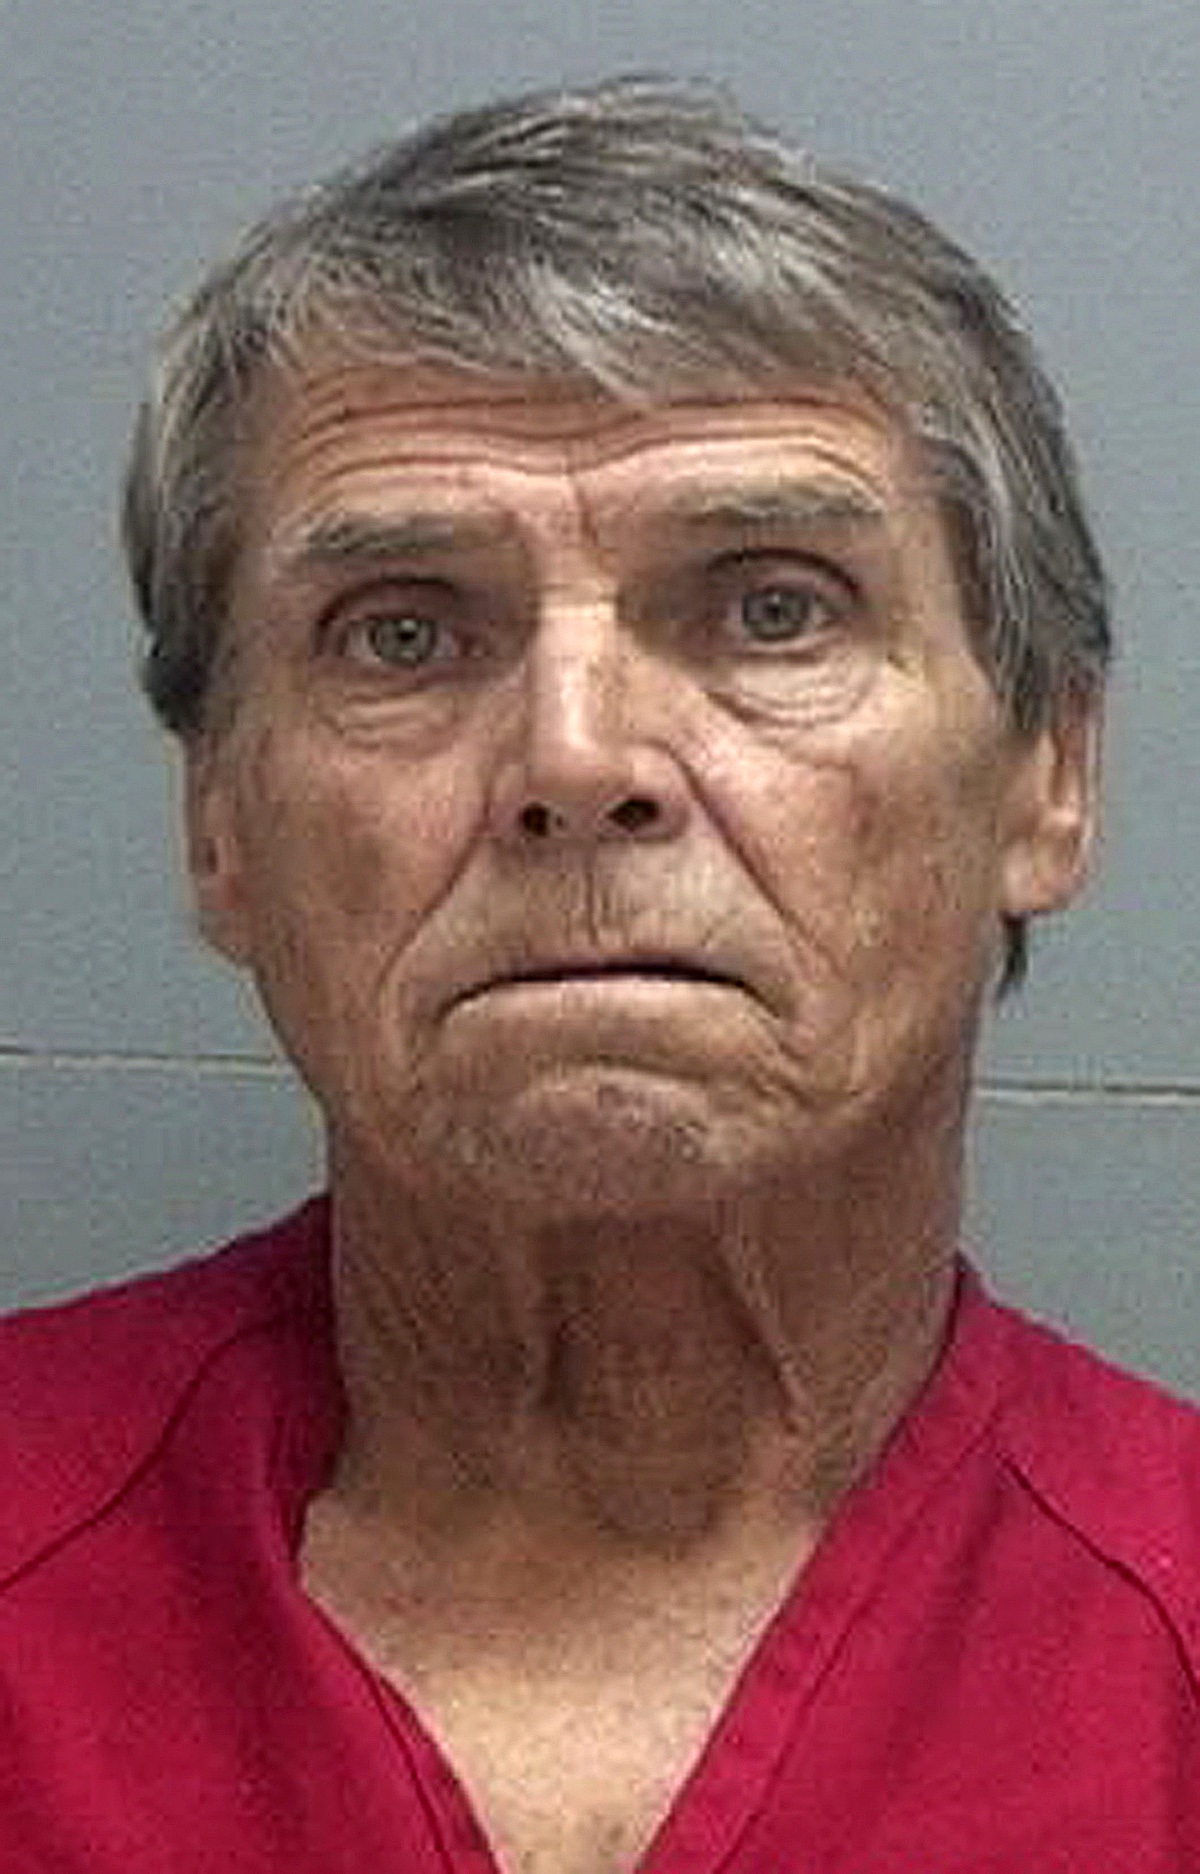 California Man Sentenced To Probation In Plane Groping Case Las Vegas